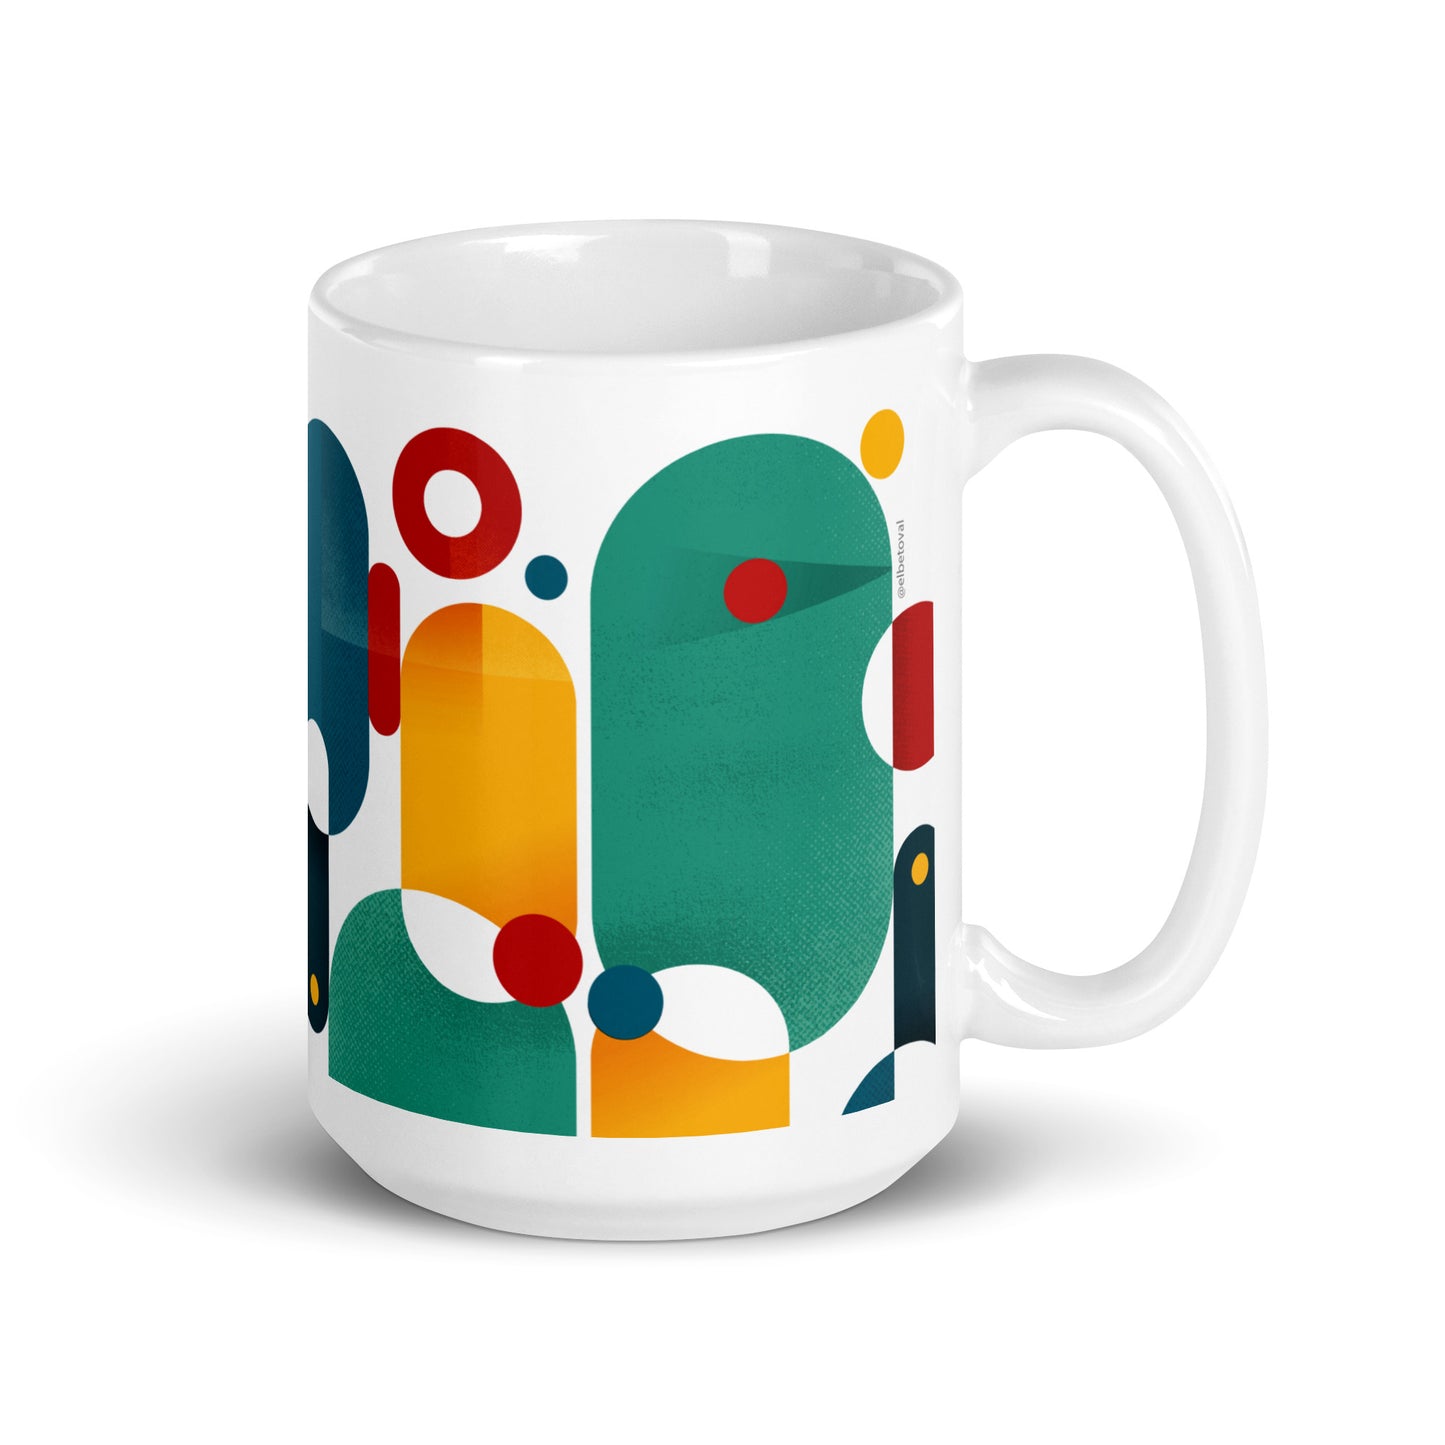 Abstract mug